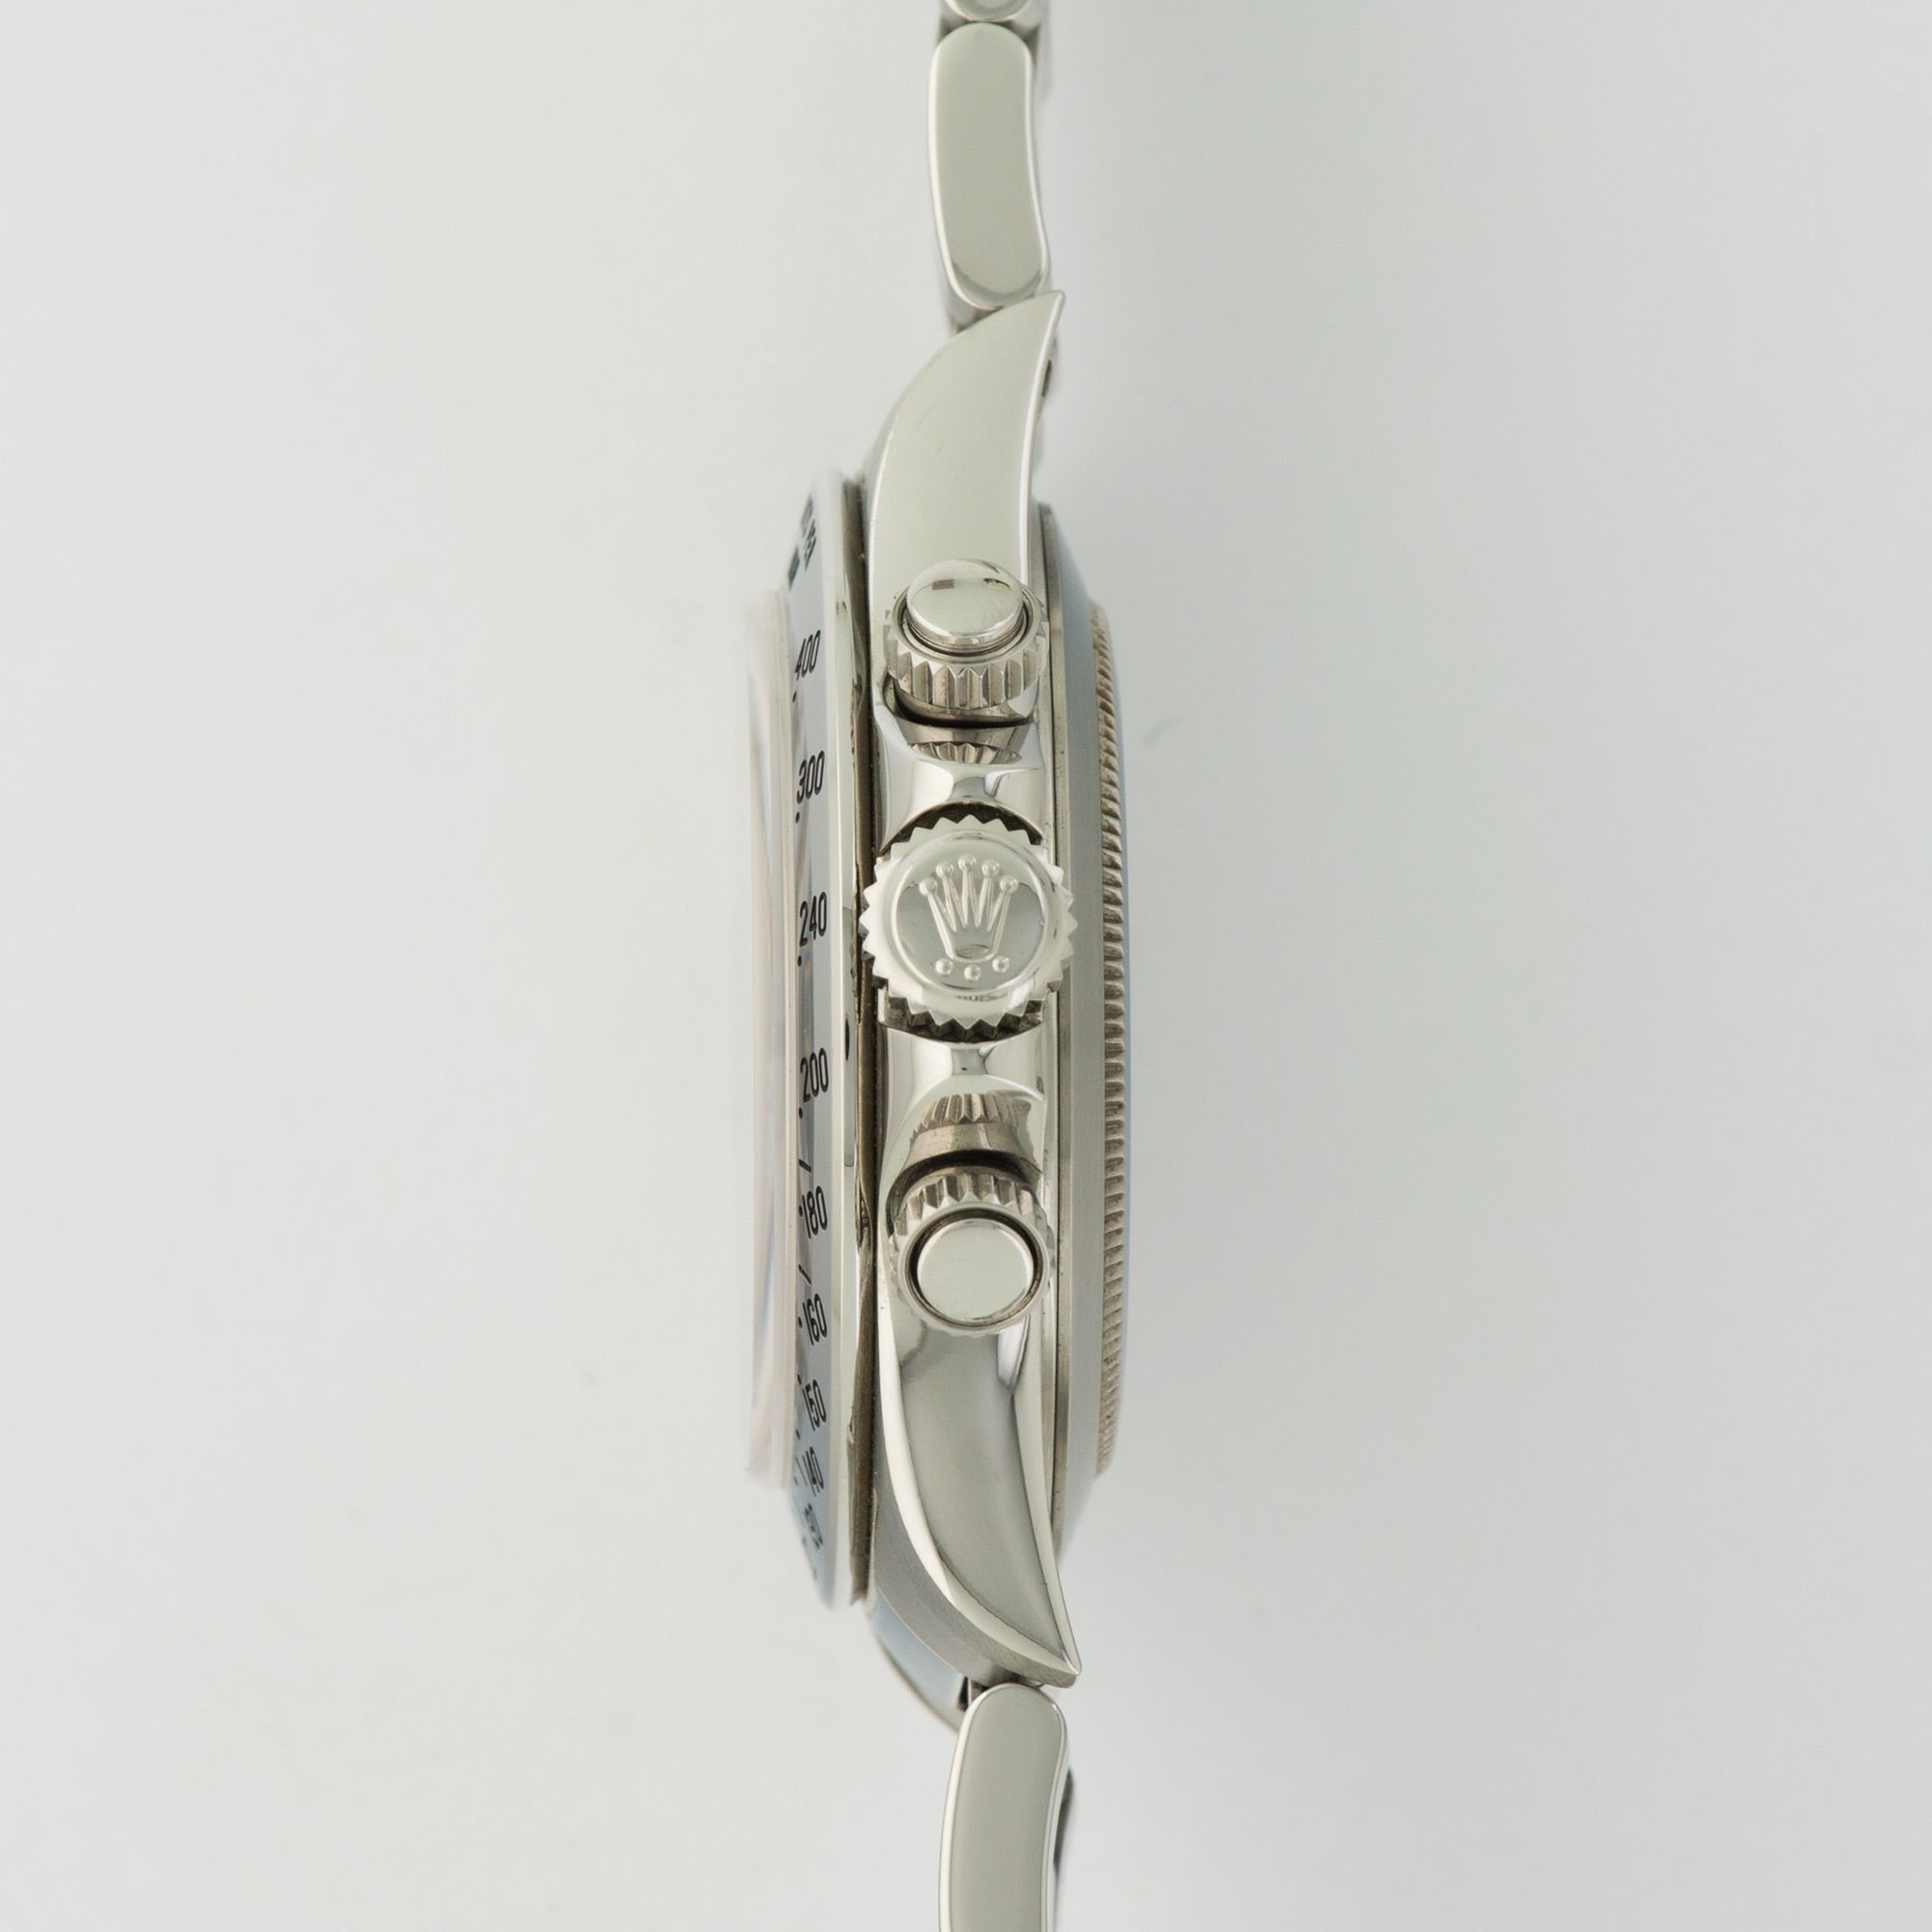 Rolex - Rolex Steel Cosmograph Daytona Zenith Movement Watch Ref. 16520 - The Keystone Watches